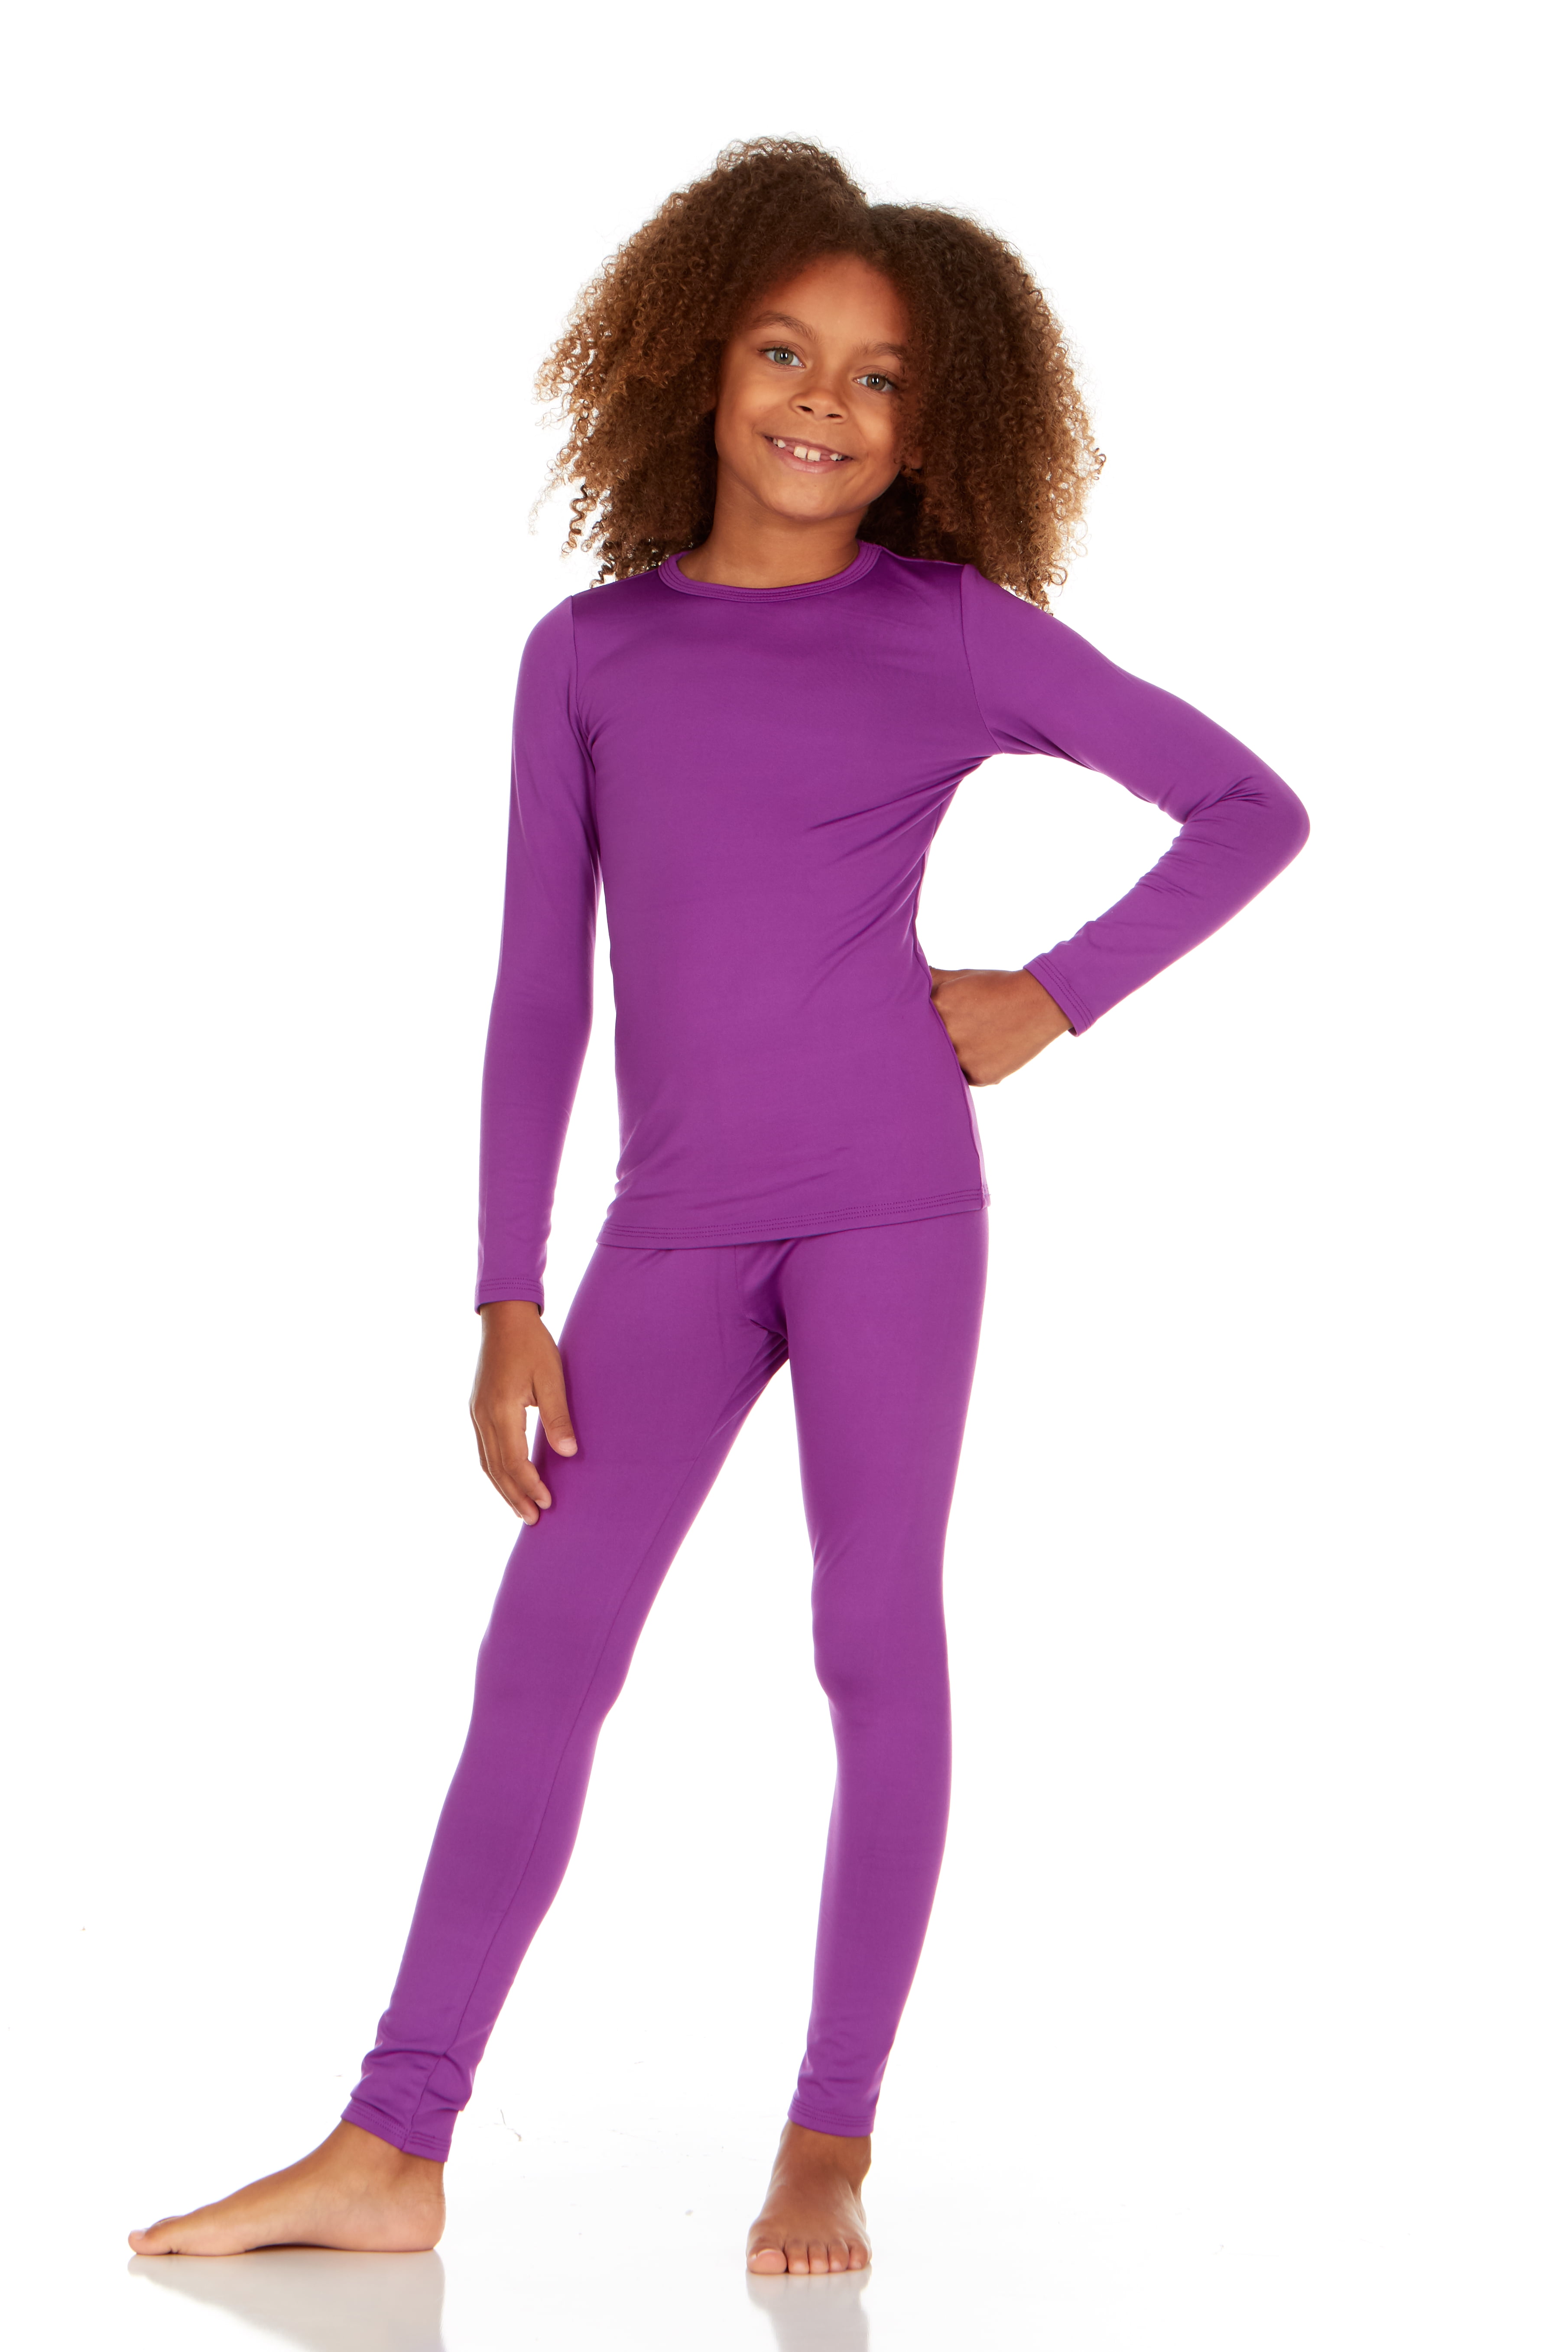 Thermajane Thermal Underwear for Girls Long John Set Kids (Purple, Large)